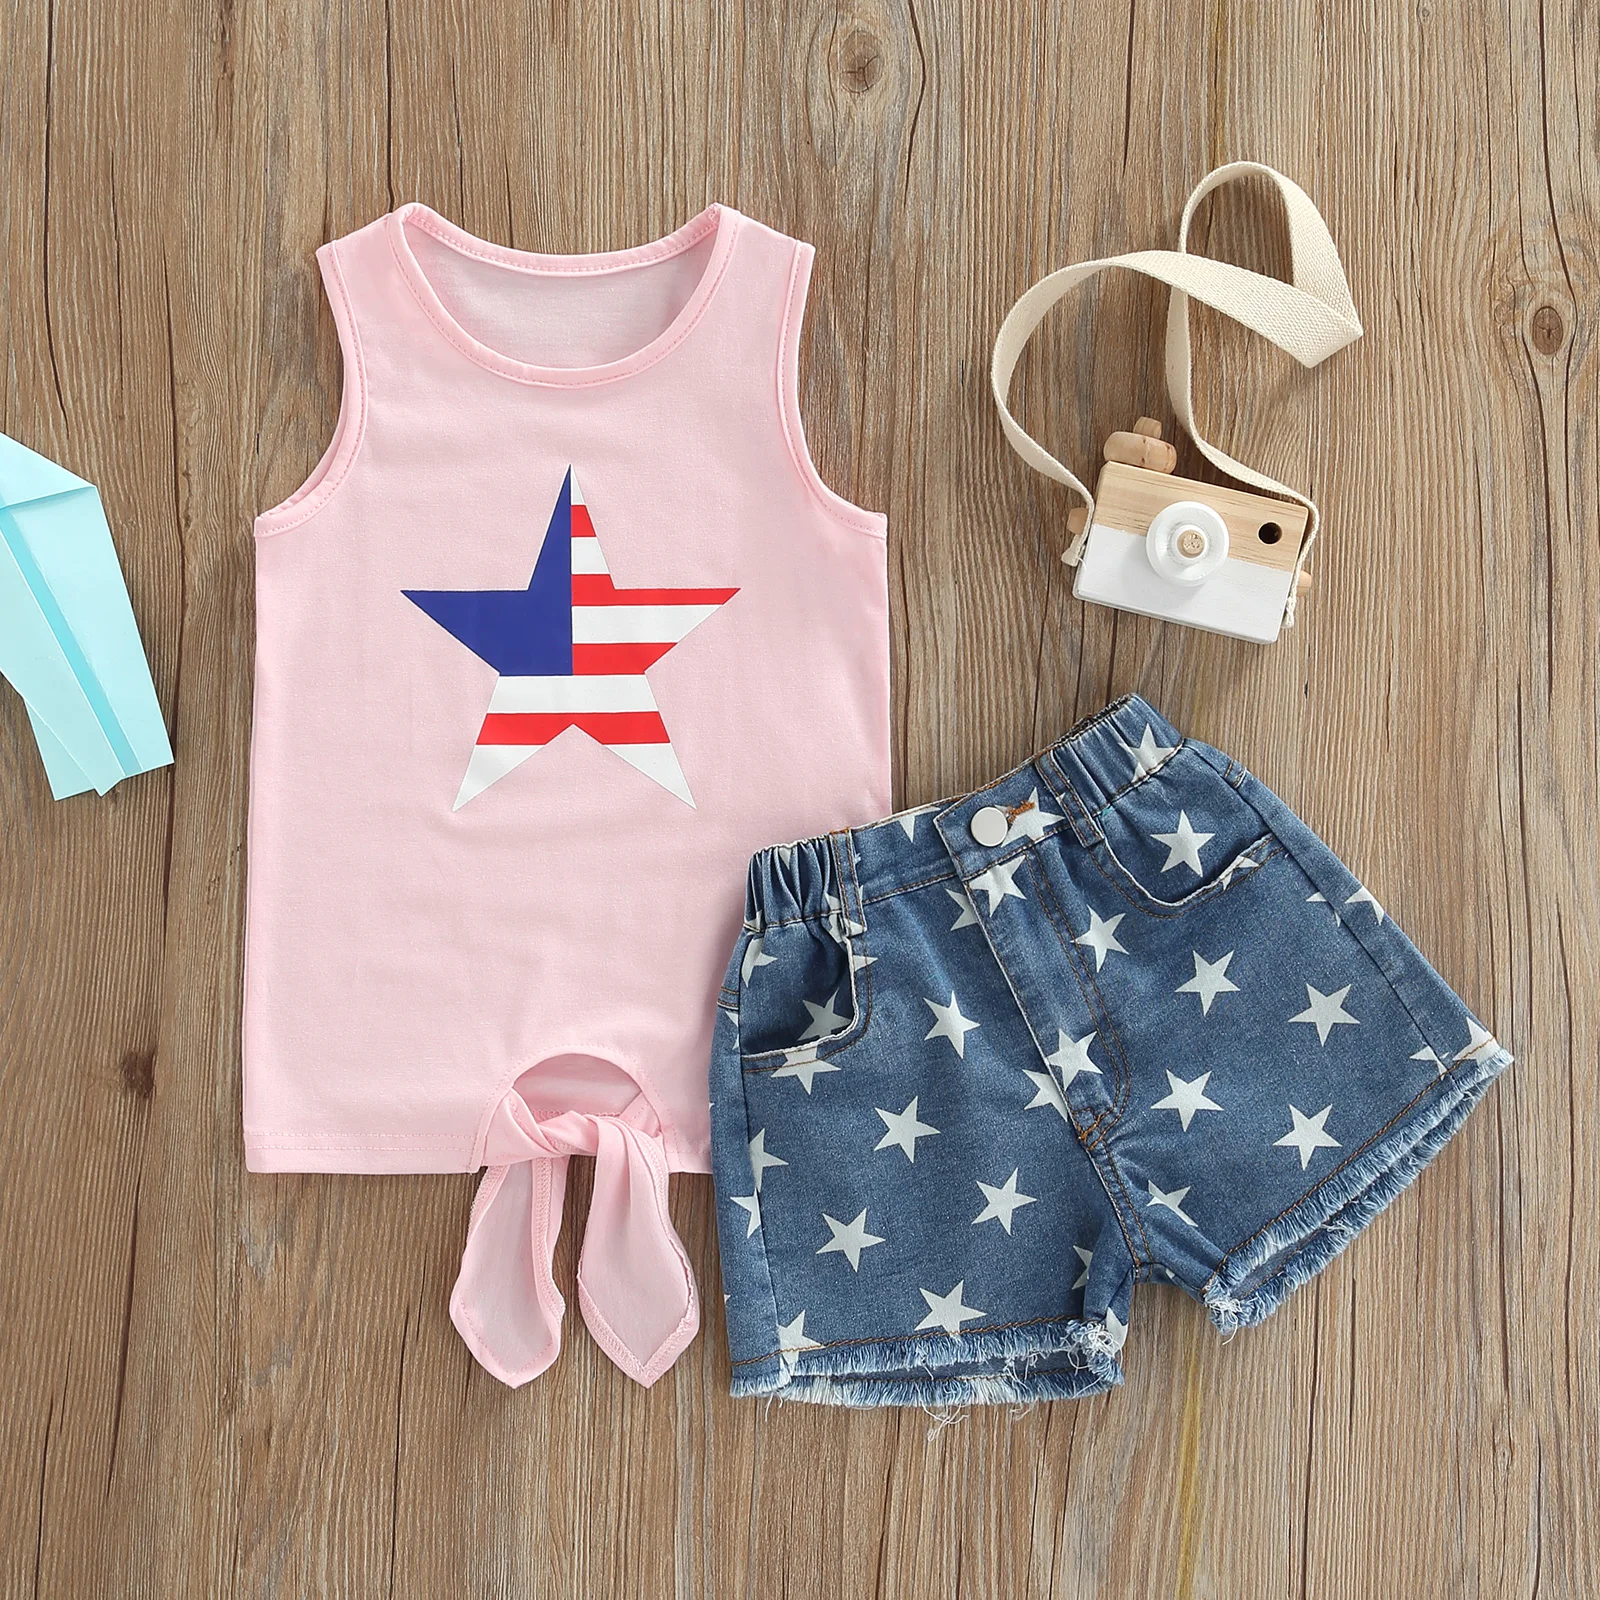 

Летний детский комплект одежды для девочек День Независимости топы без рукавов с принтом звезд джинсовые шорты комплект одежды